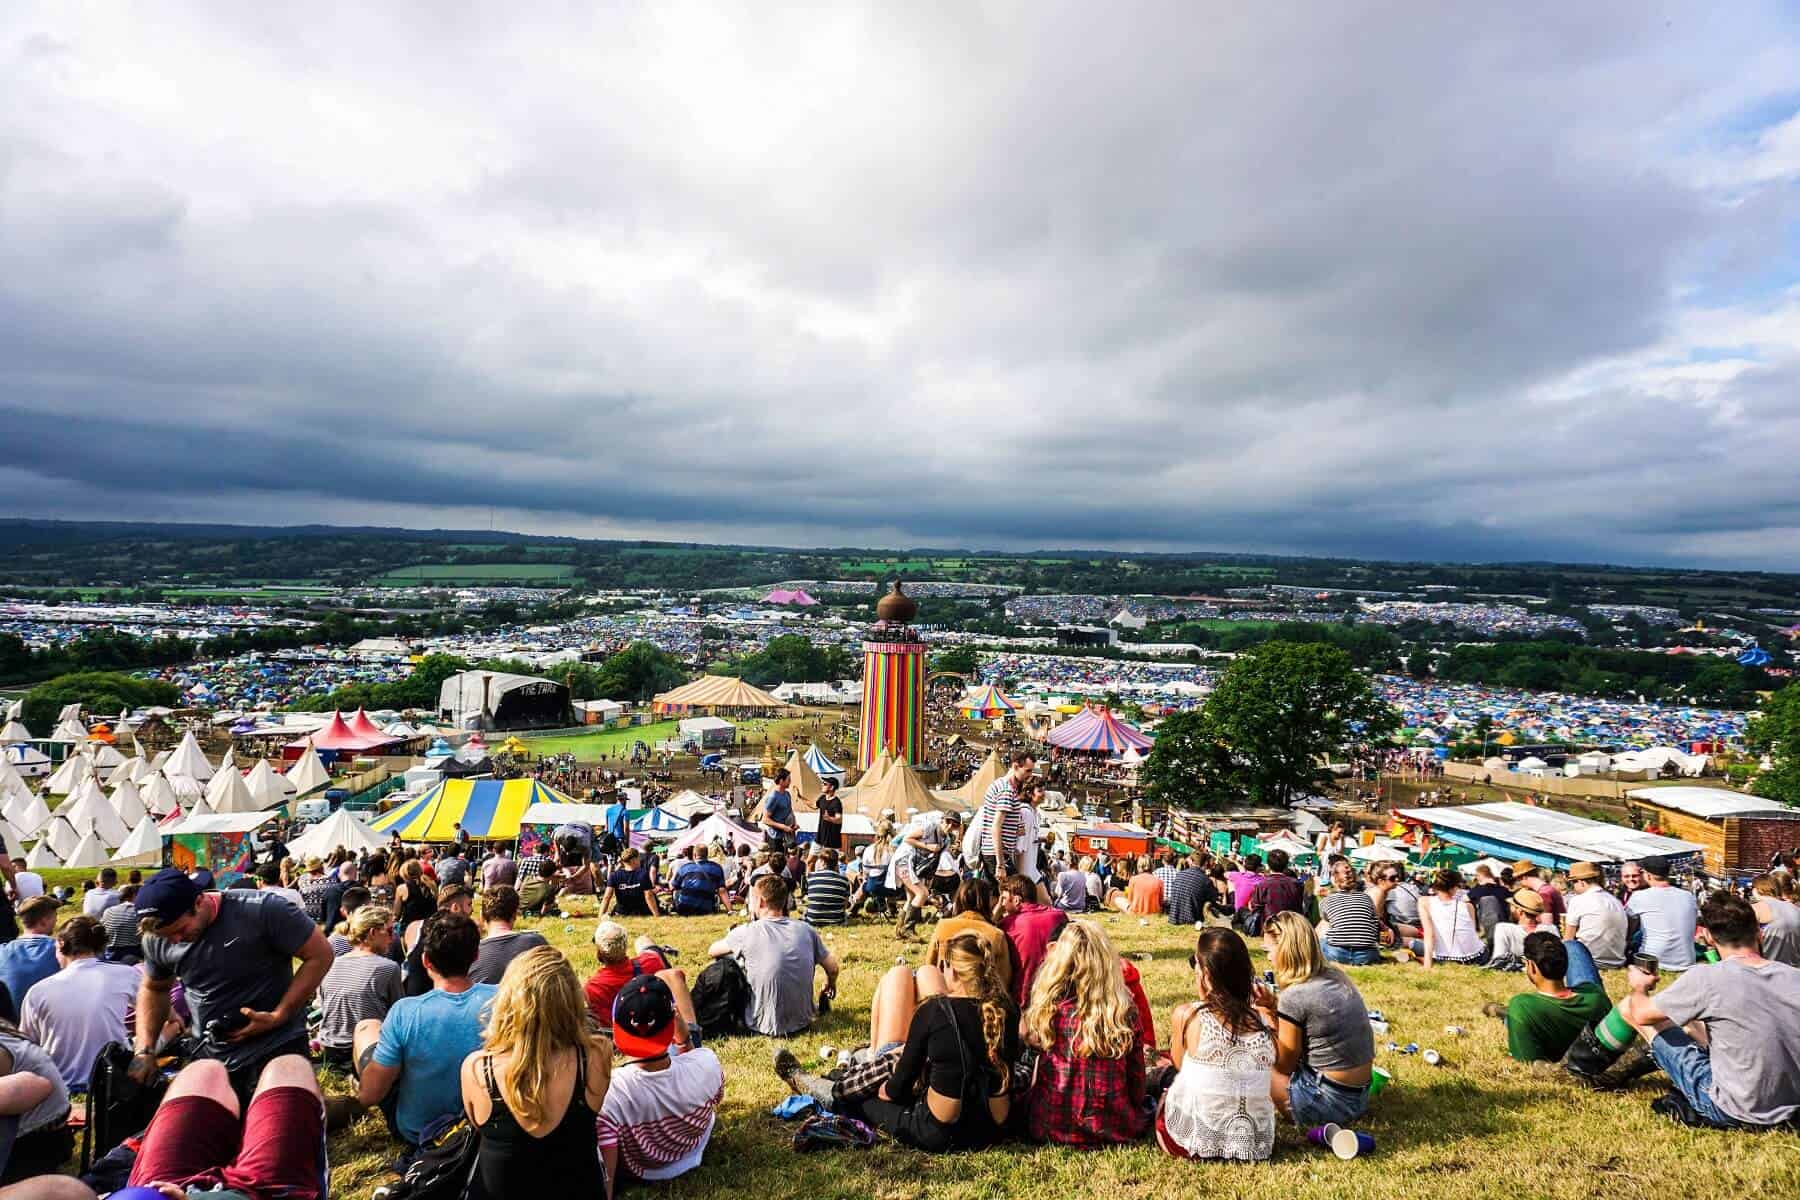 Glastonbury founder Michael Eavis wants to organise a smaller festival in September